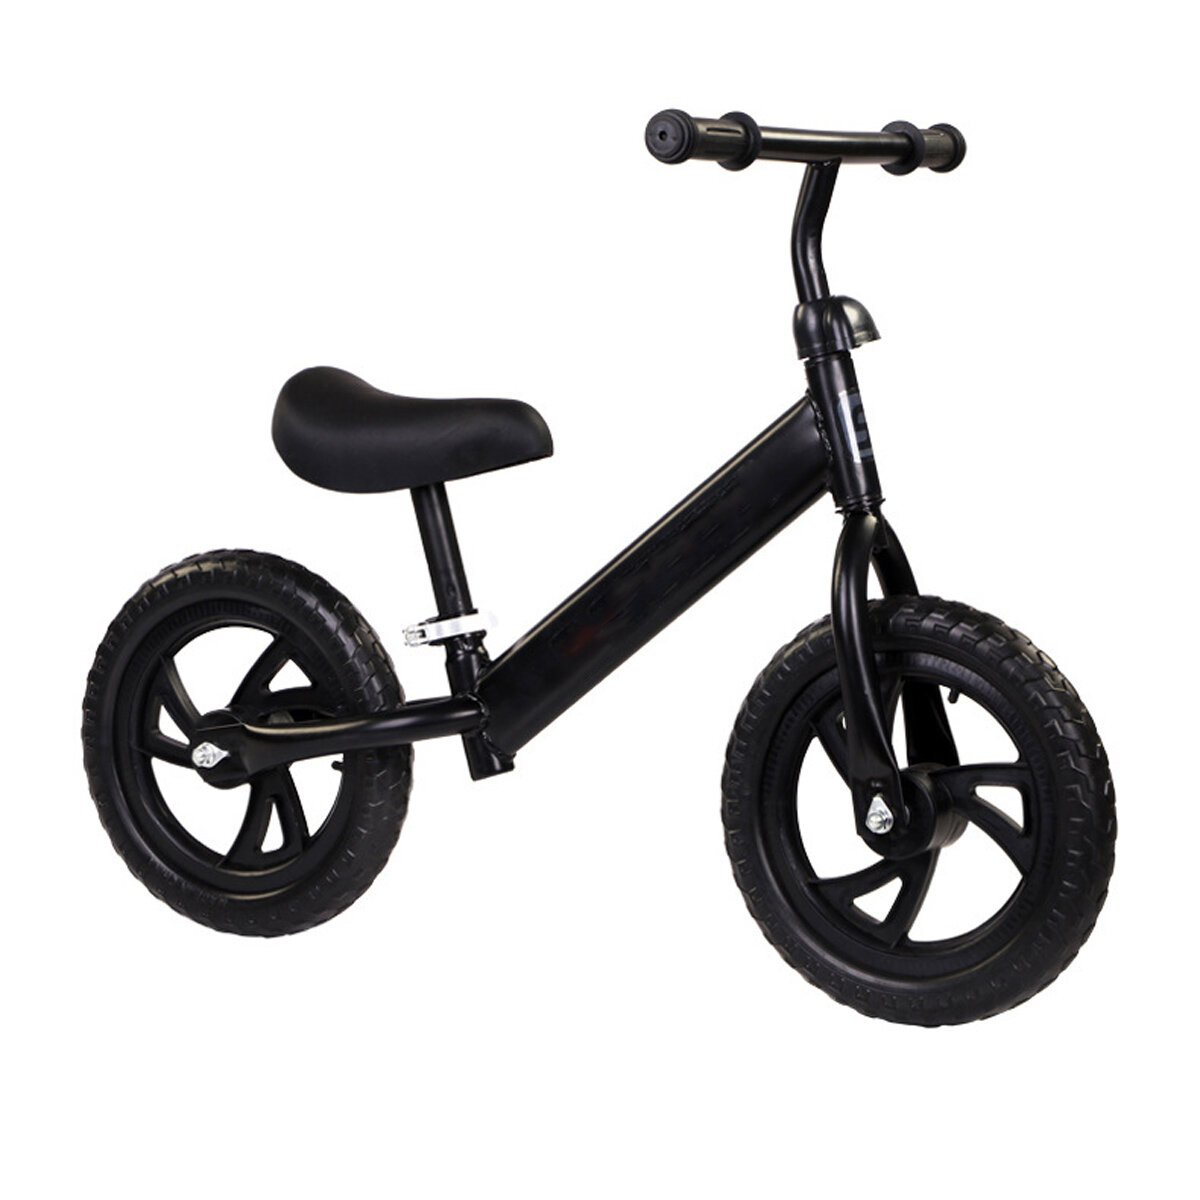 

Детский балансировочный велосипед без педали, самокат для малышей, прогулочный тренировочный баланс, легкий шаг, съемный